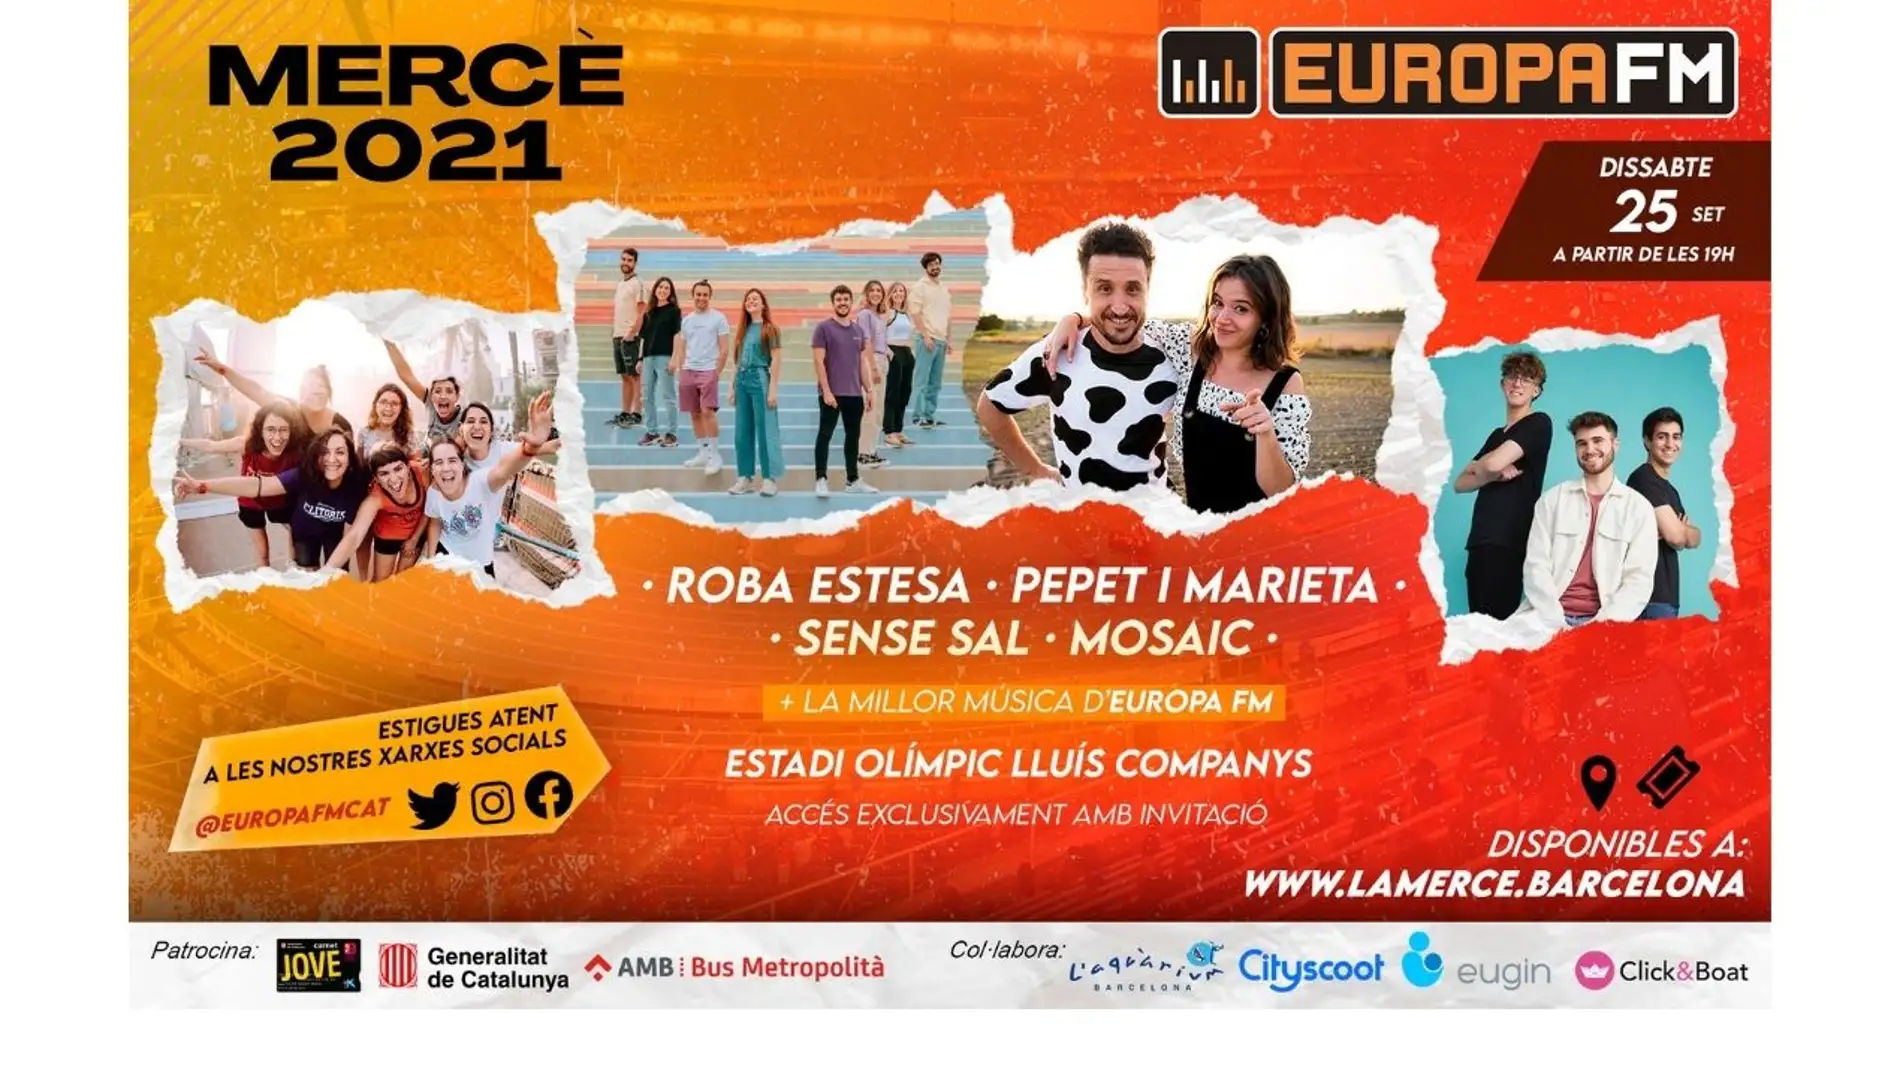 Consigue invitaciones para disfrutar de las fiestas de La Mercè 2021 en el escenario Europa FM